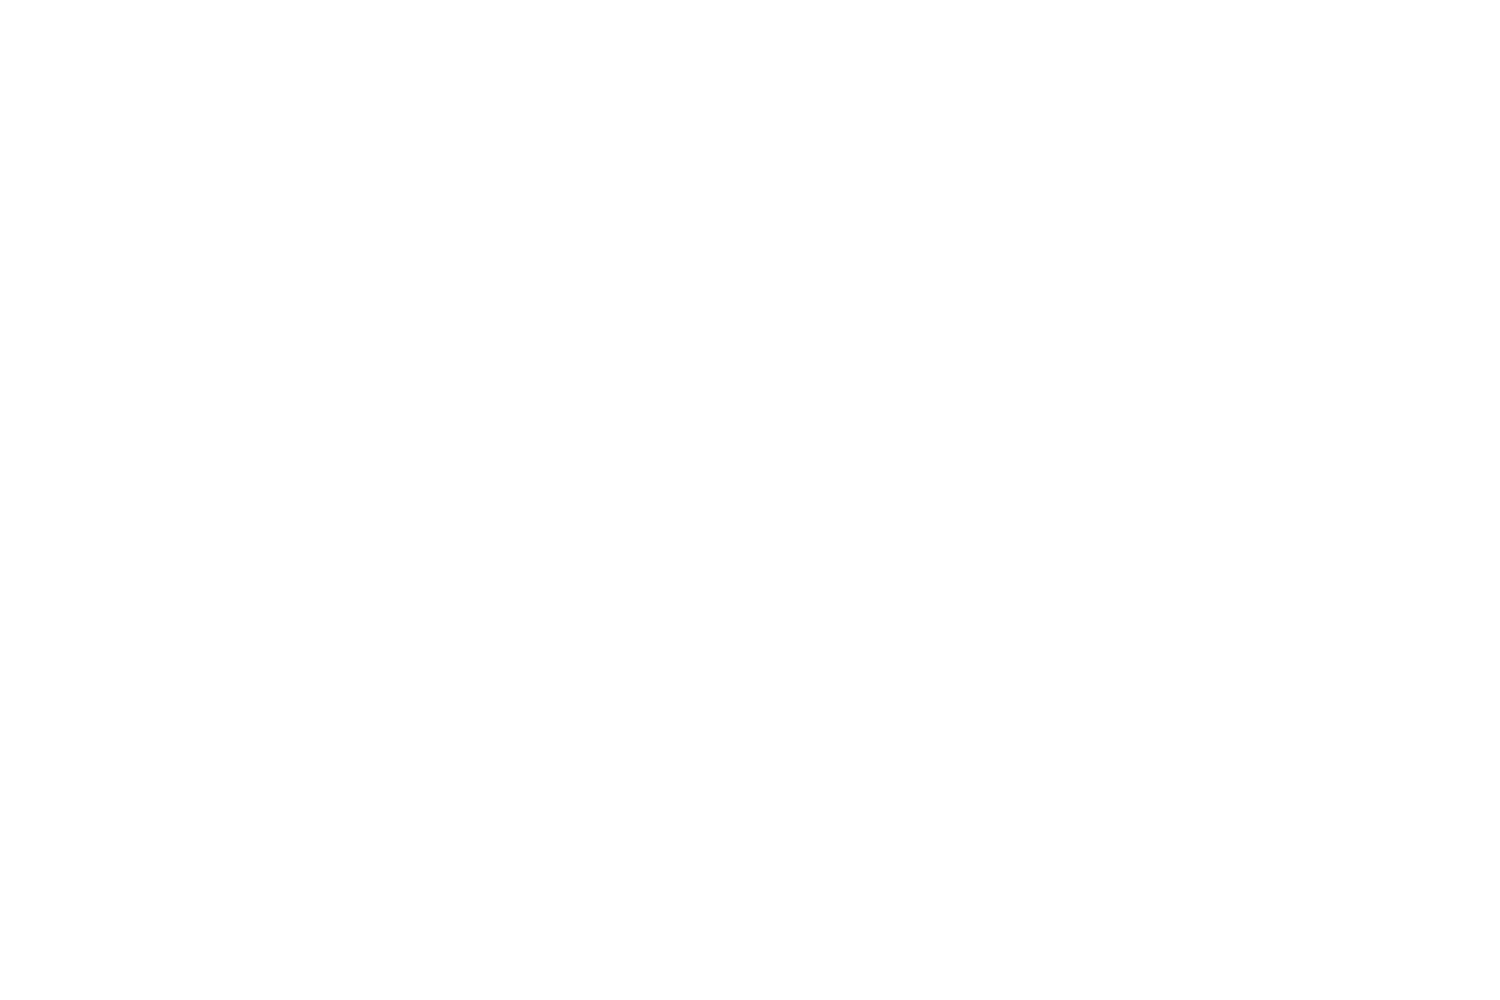 SummitMedia+Logo+White